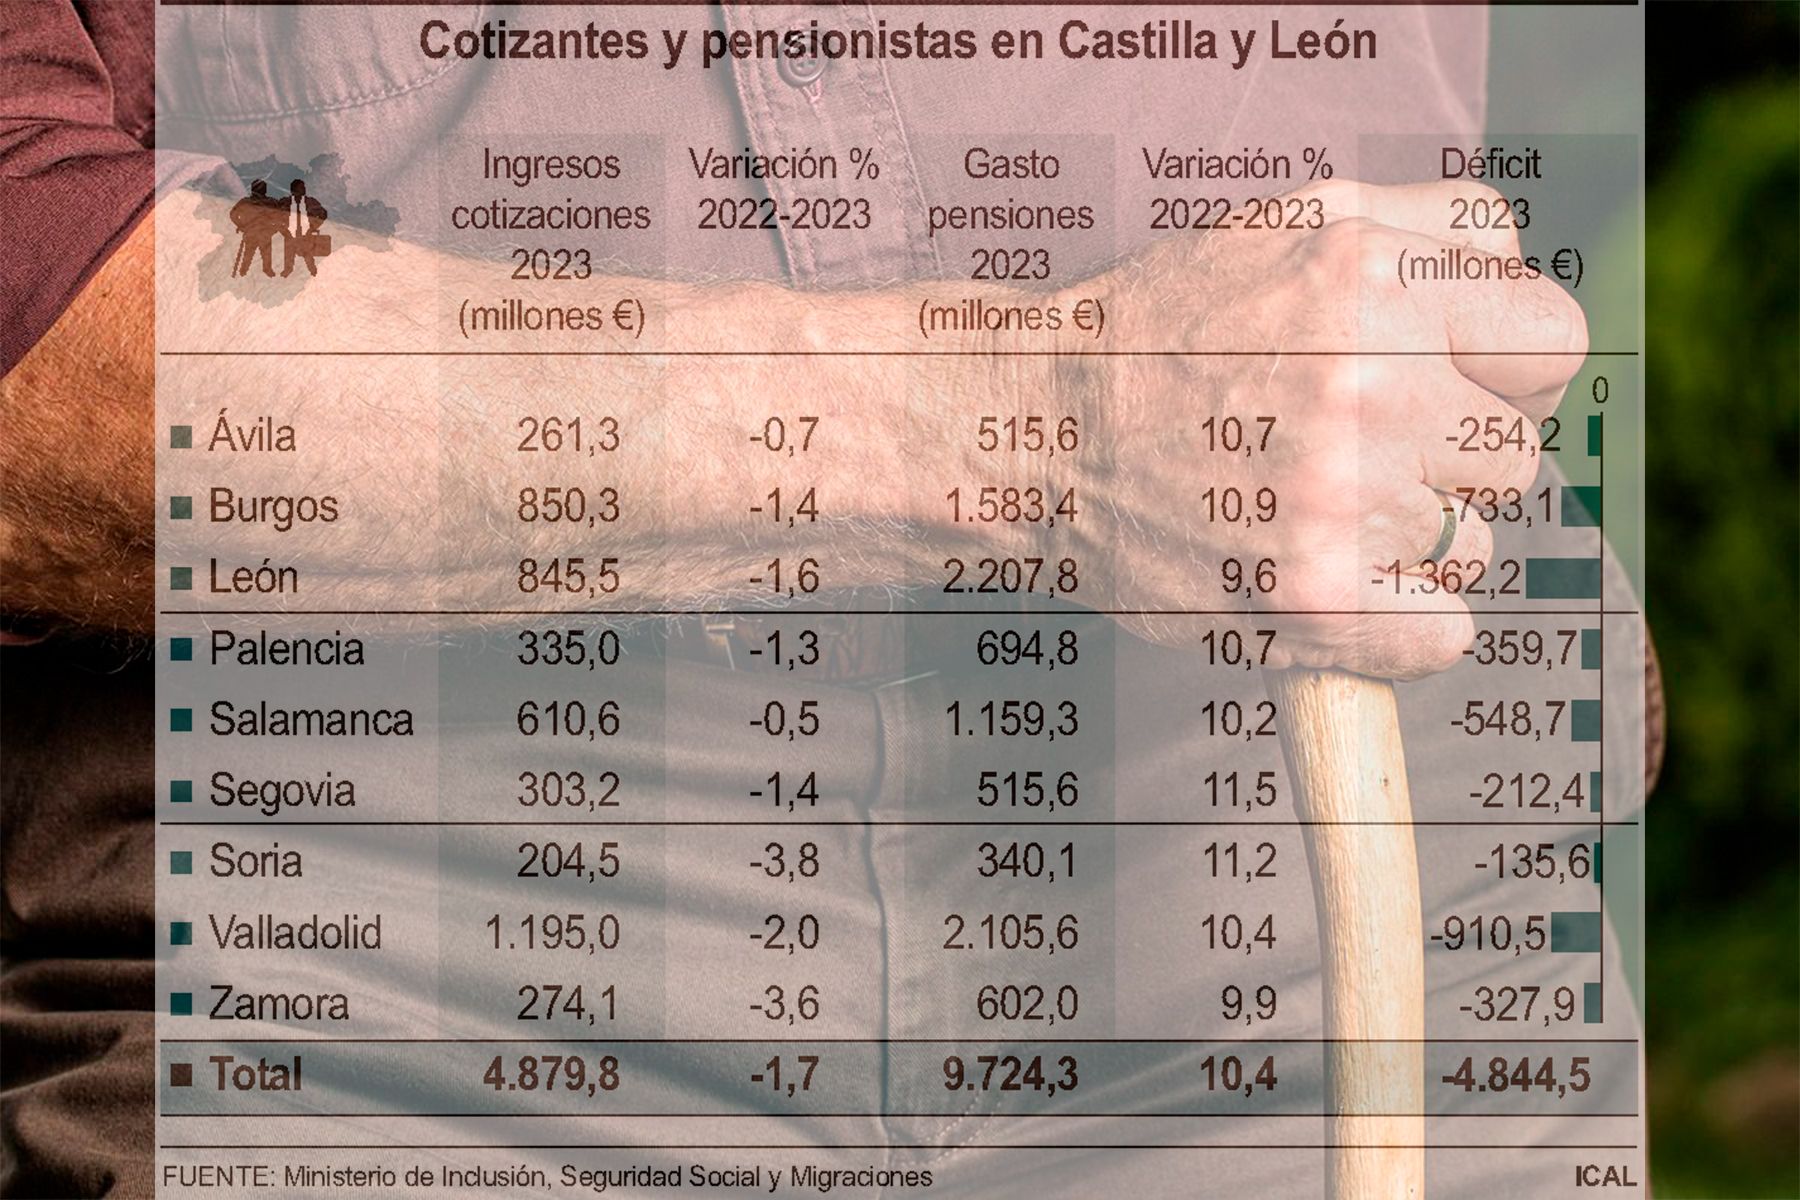 El gasto en pensiones en la provincia de León casi triplica al ingreso y genera 1.300 millones de déficit al sistema público